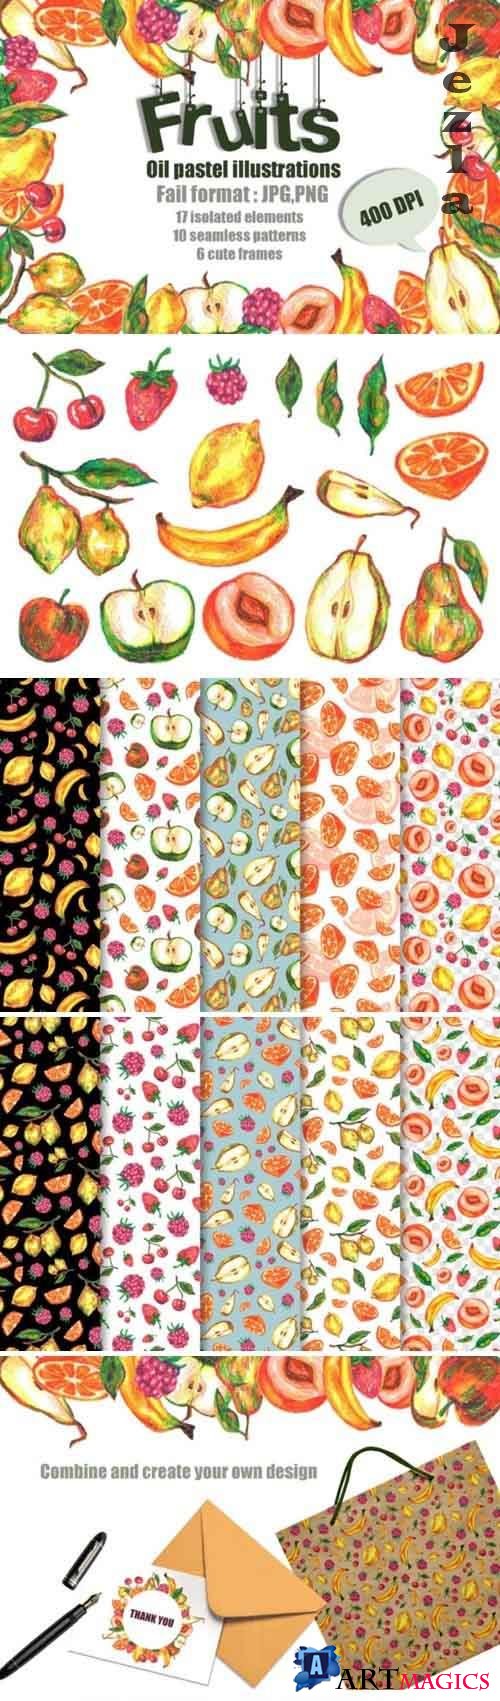 Fruits Oil Pastels illustrations set - 5009746